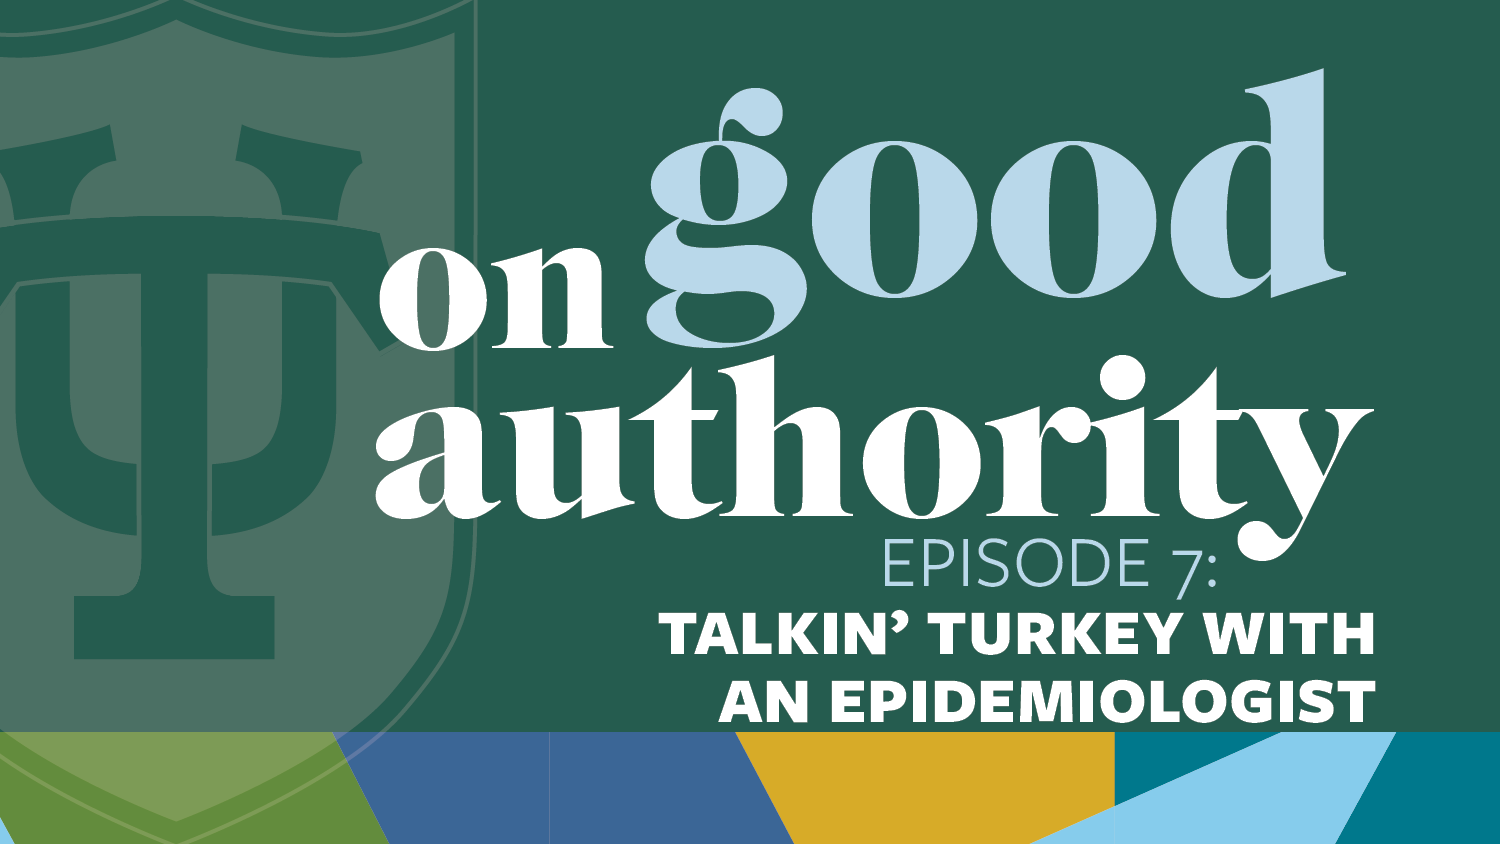 Episode 7: Talkin’ Turkey with an Epidemiologist